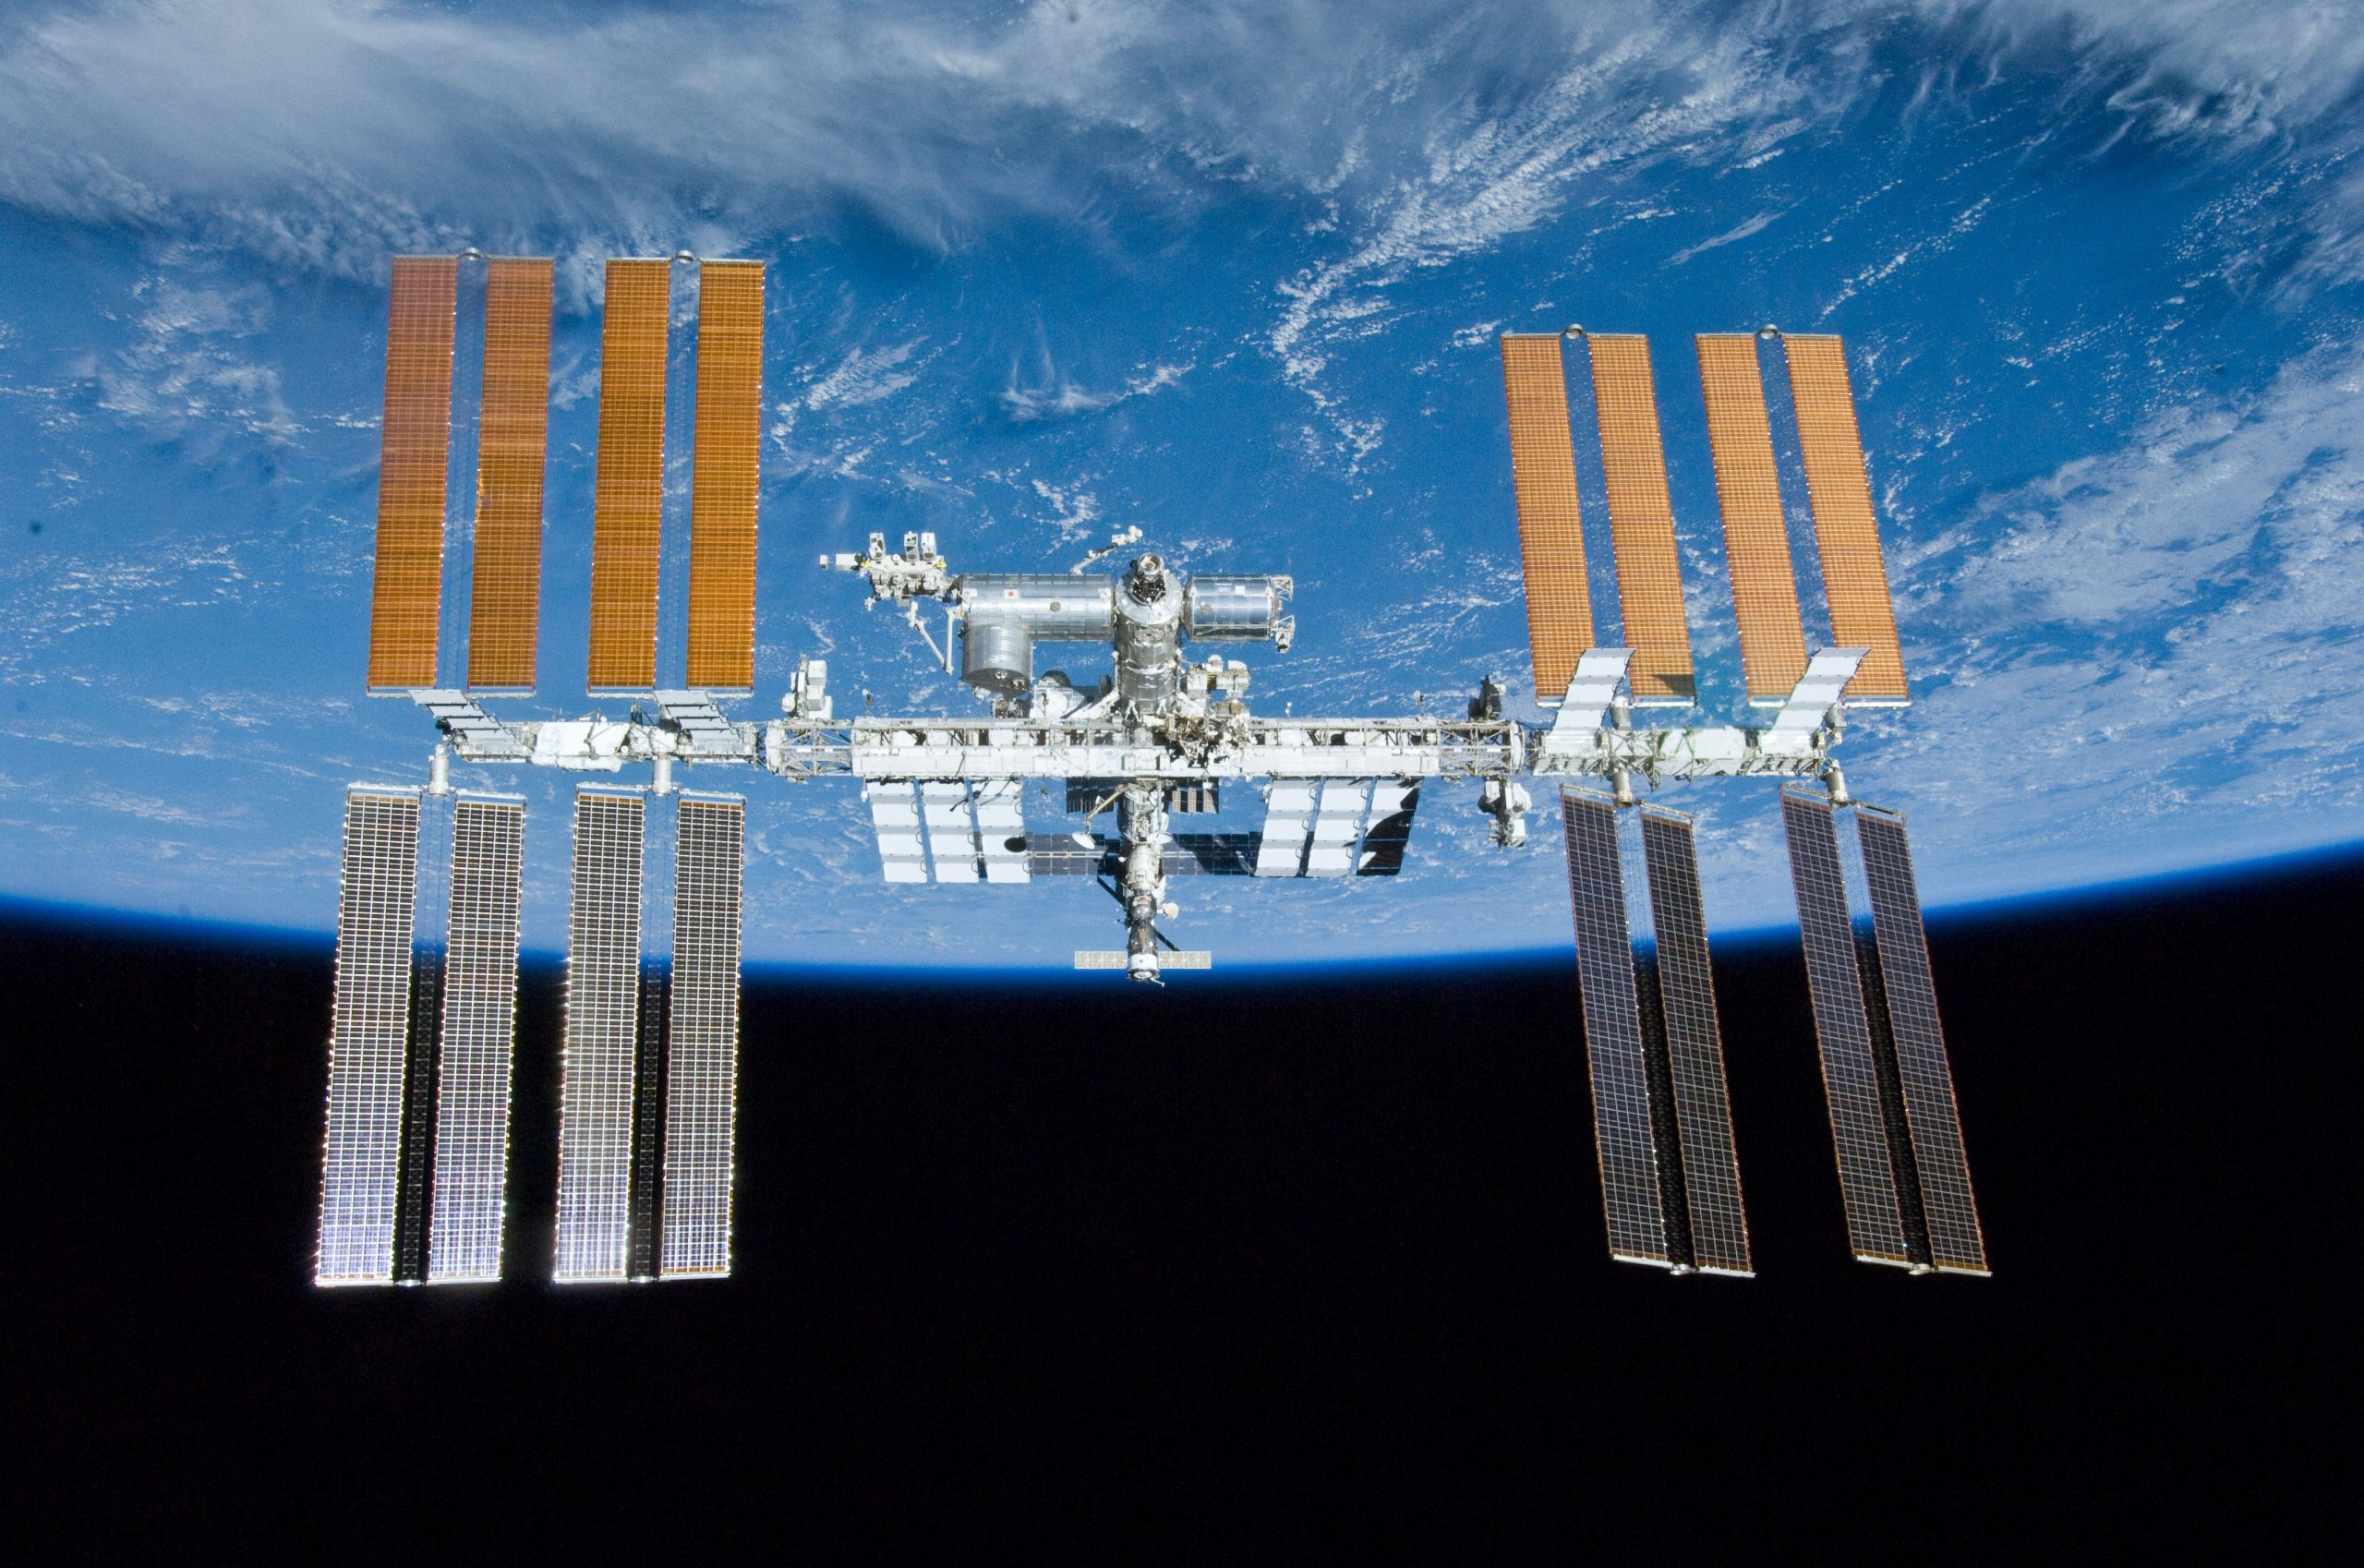 Χωρίς χρηματοδότηση από τις ΗΠΑ κινδυνεύει να μείνει ο διεθνής διαστημικός σταθμός